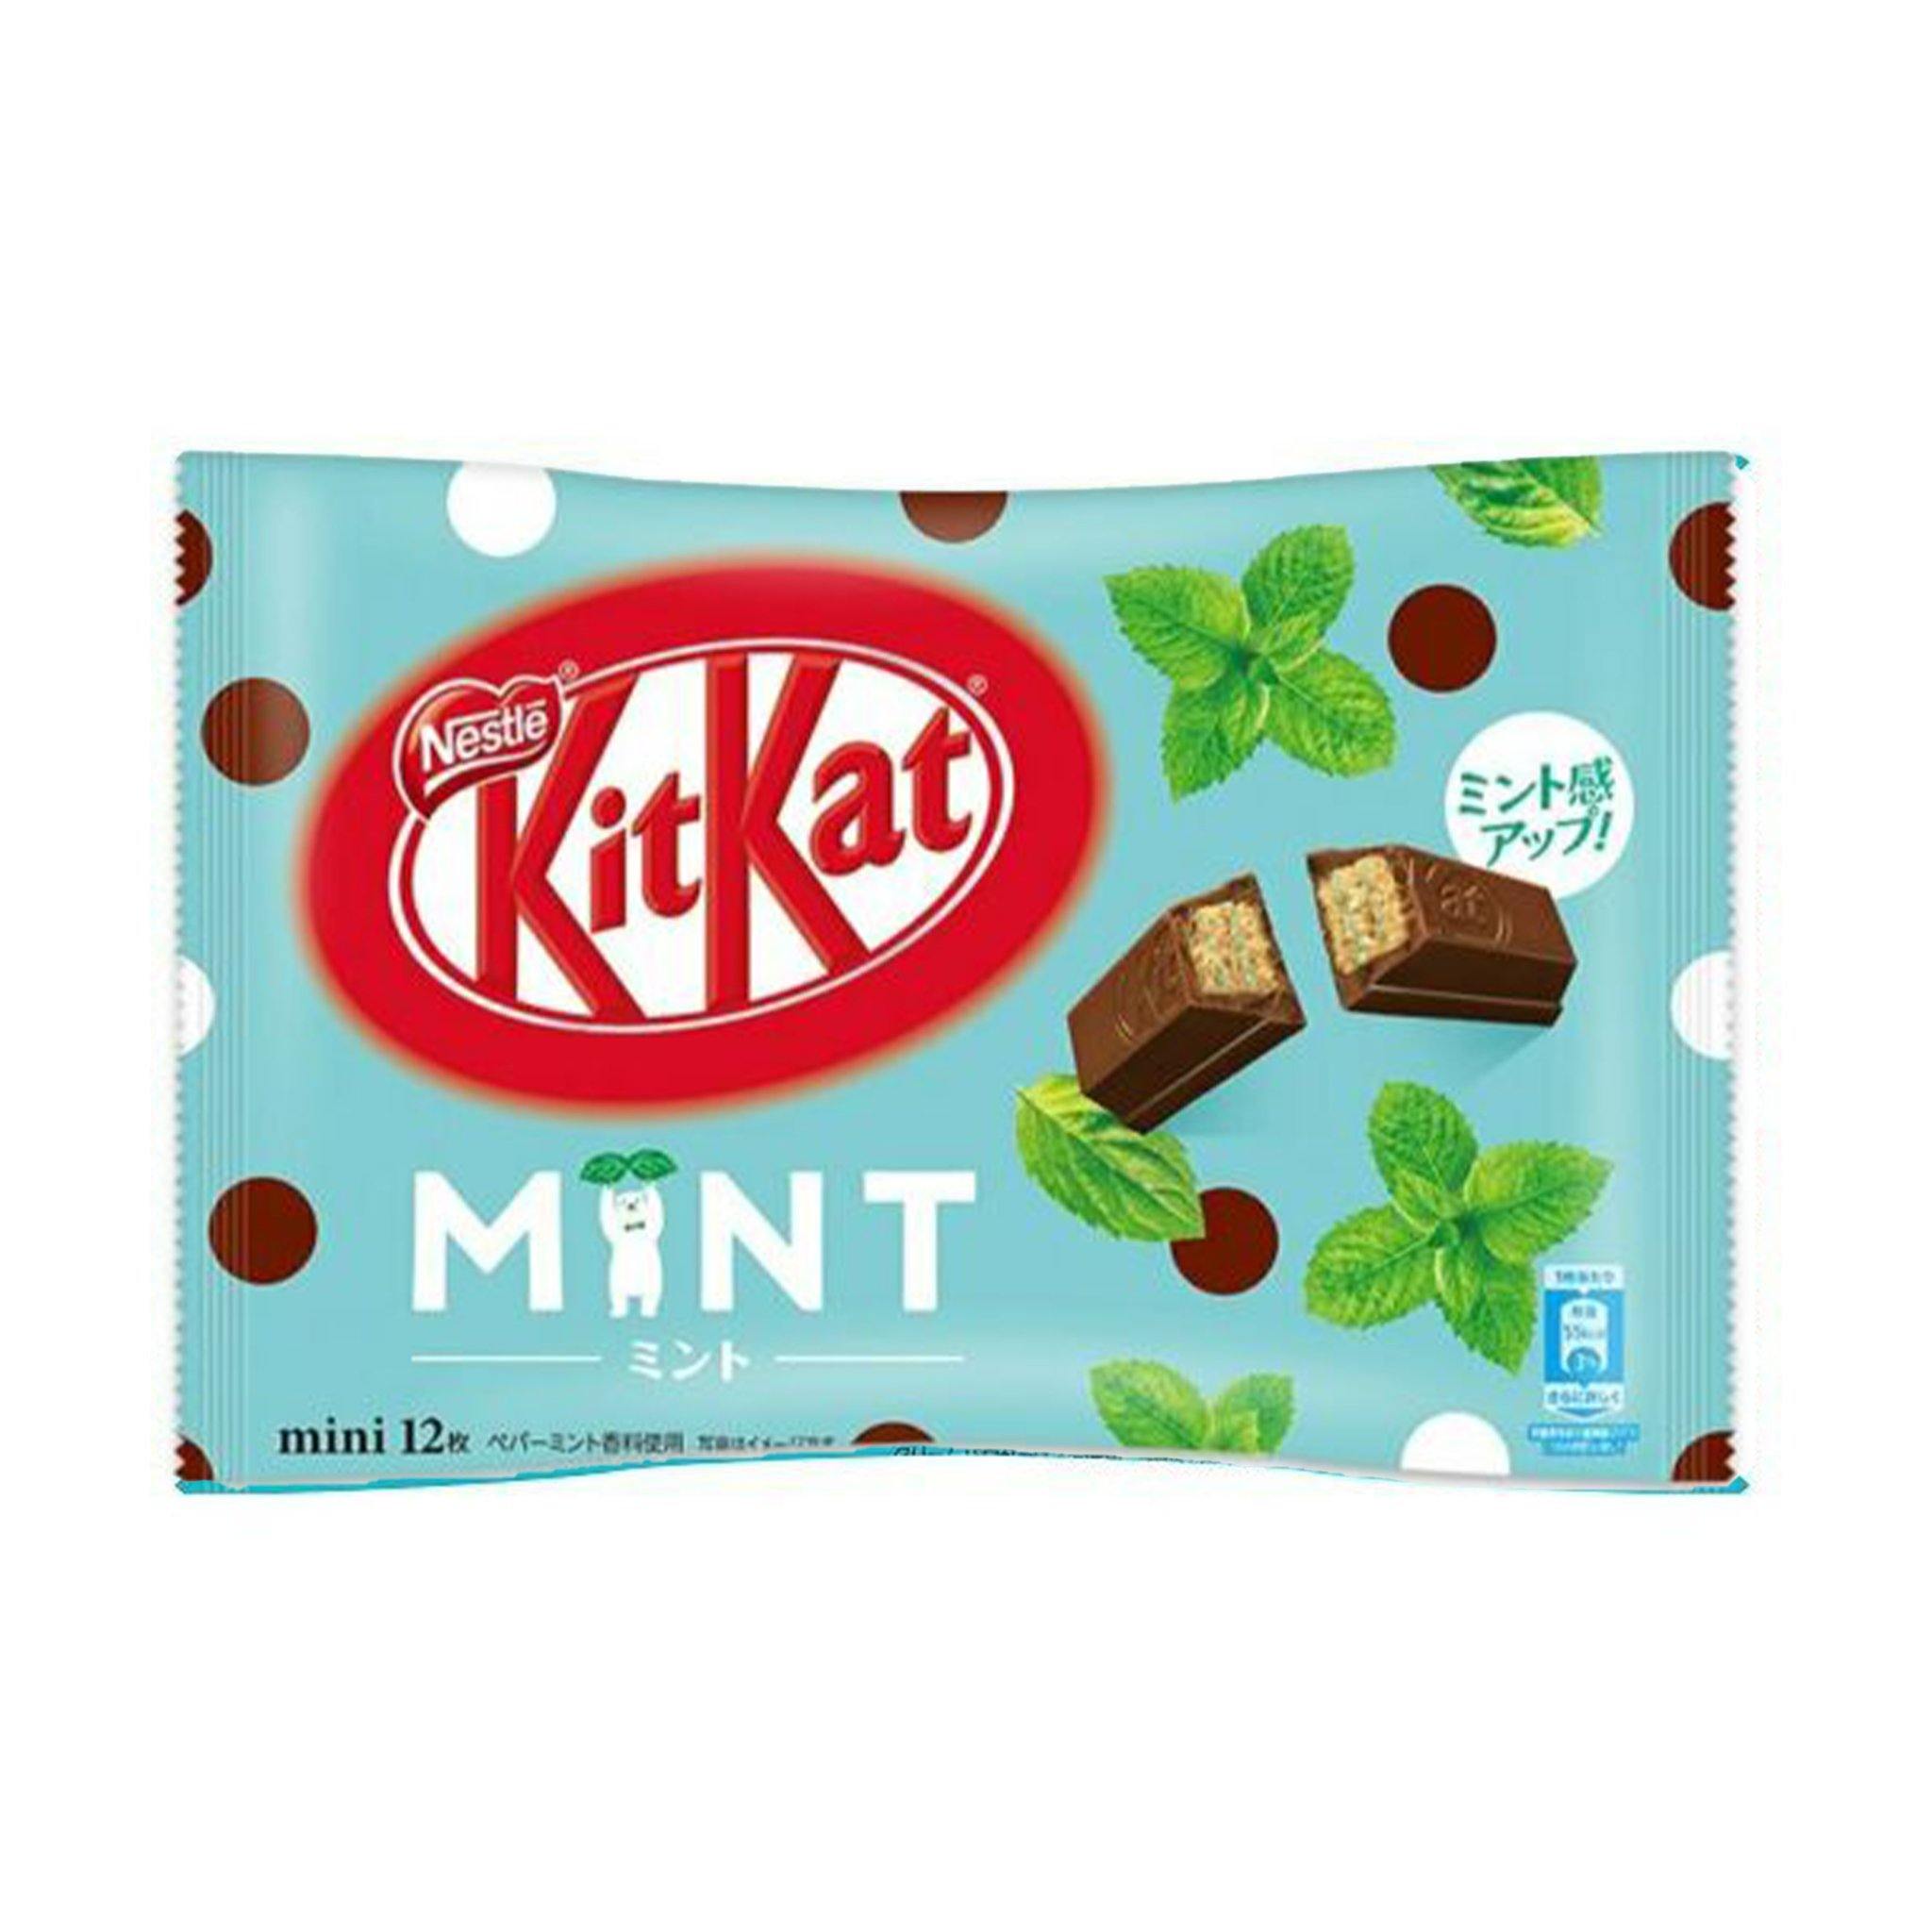 Kit Kat Mint - Japan - Sweet Exotics